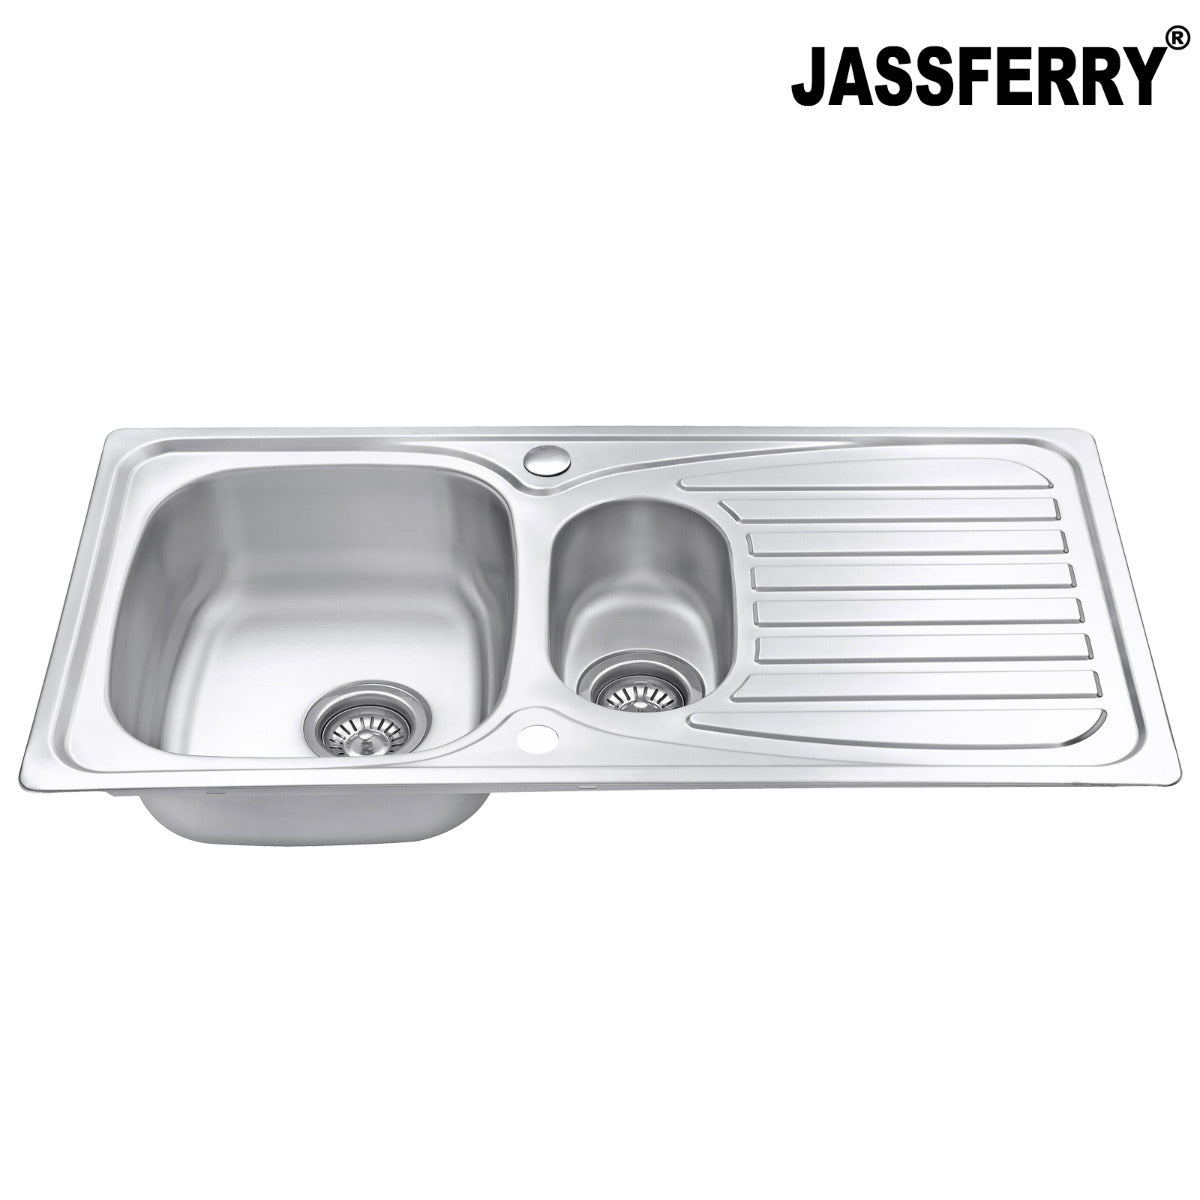 JassferryJASSFERRY Inset Stainless Steel Kitchen Sink One and Half Bowl Reversible DrainerKitchen Sinks